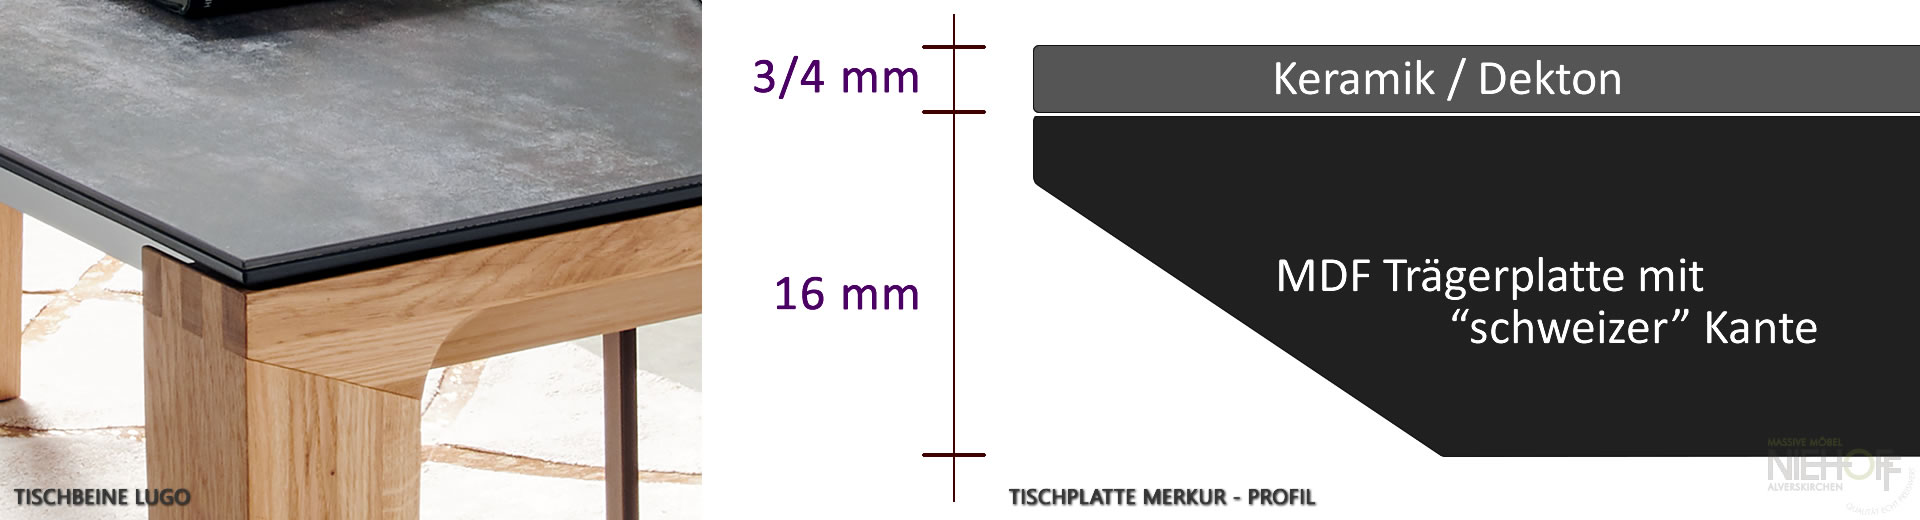 Profil der Tischplatte - Keramiktisch Merkur mit 2 Klappeinlagen